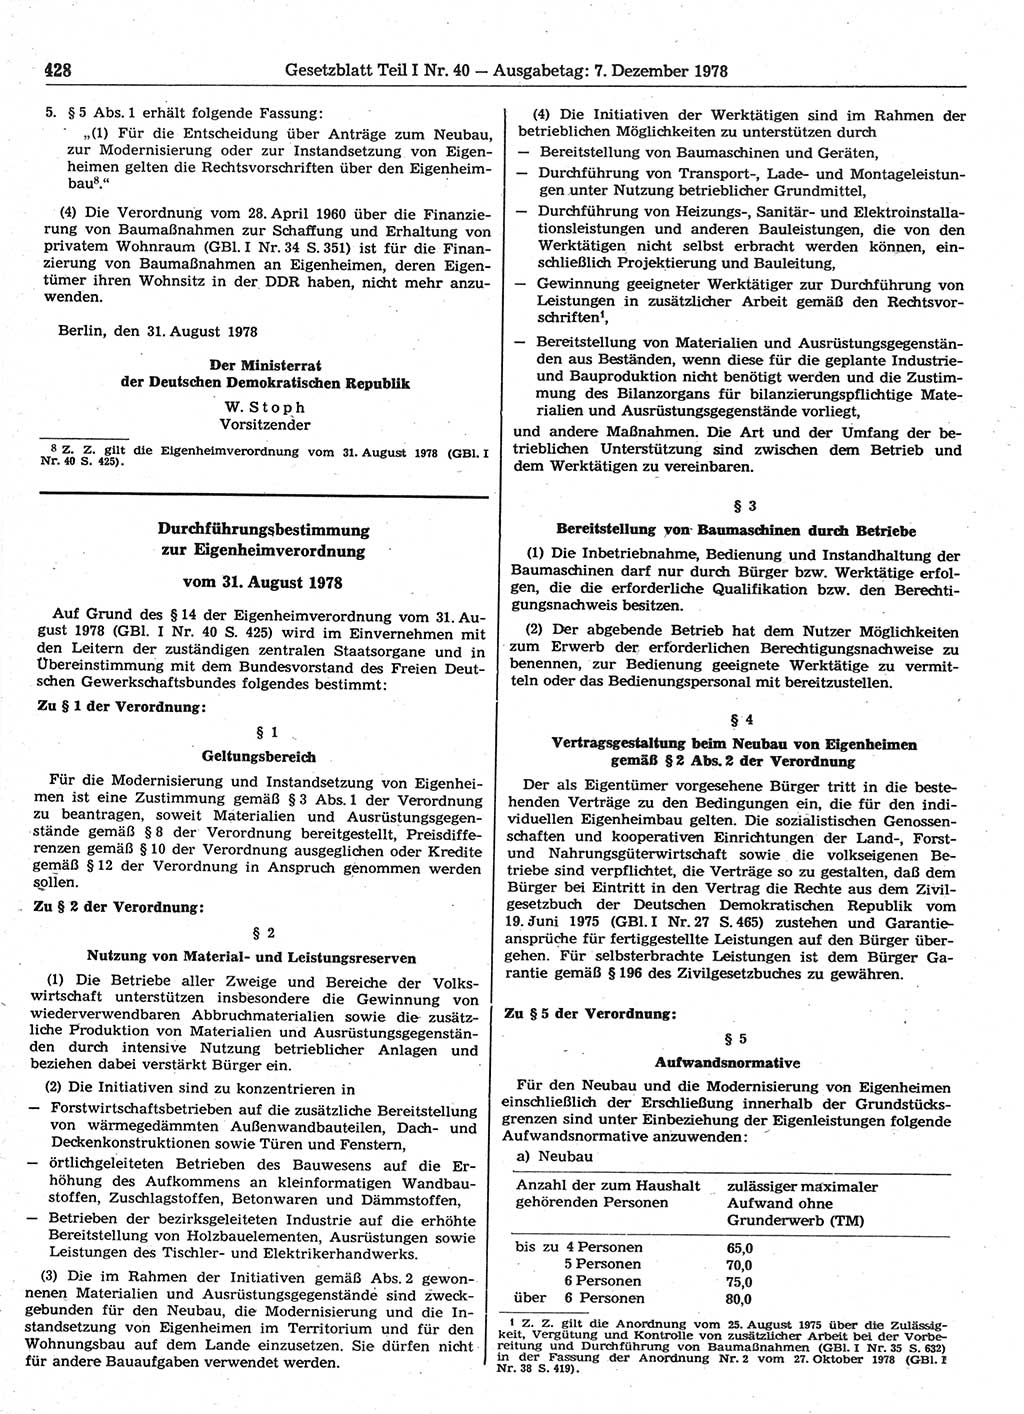 Gesetzblatt (GBl.) der Deutschen Demokratischen Republik (DDR) Teil Ⅰ 1978, Seite 428 (GBl. DDR Ⅰ 1978, S. 428)